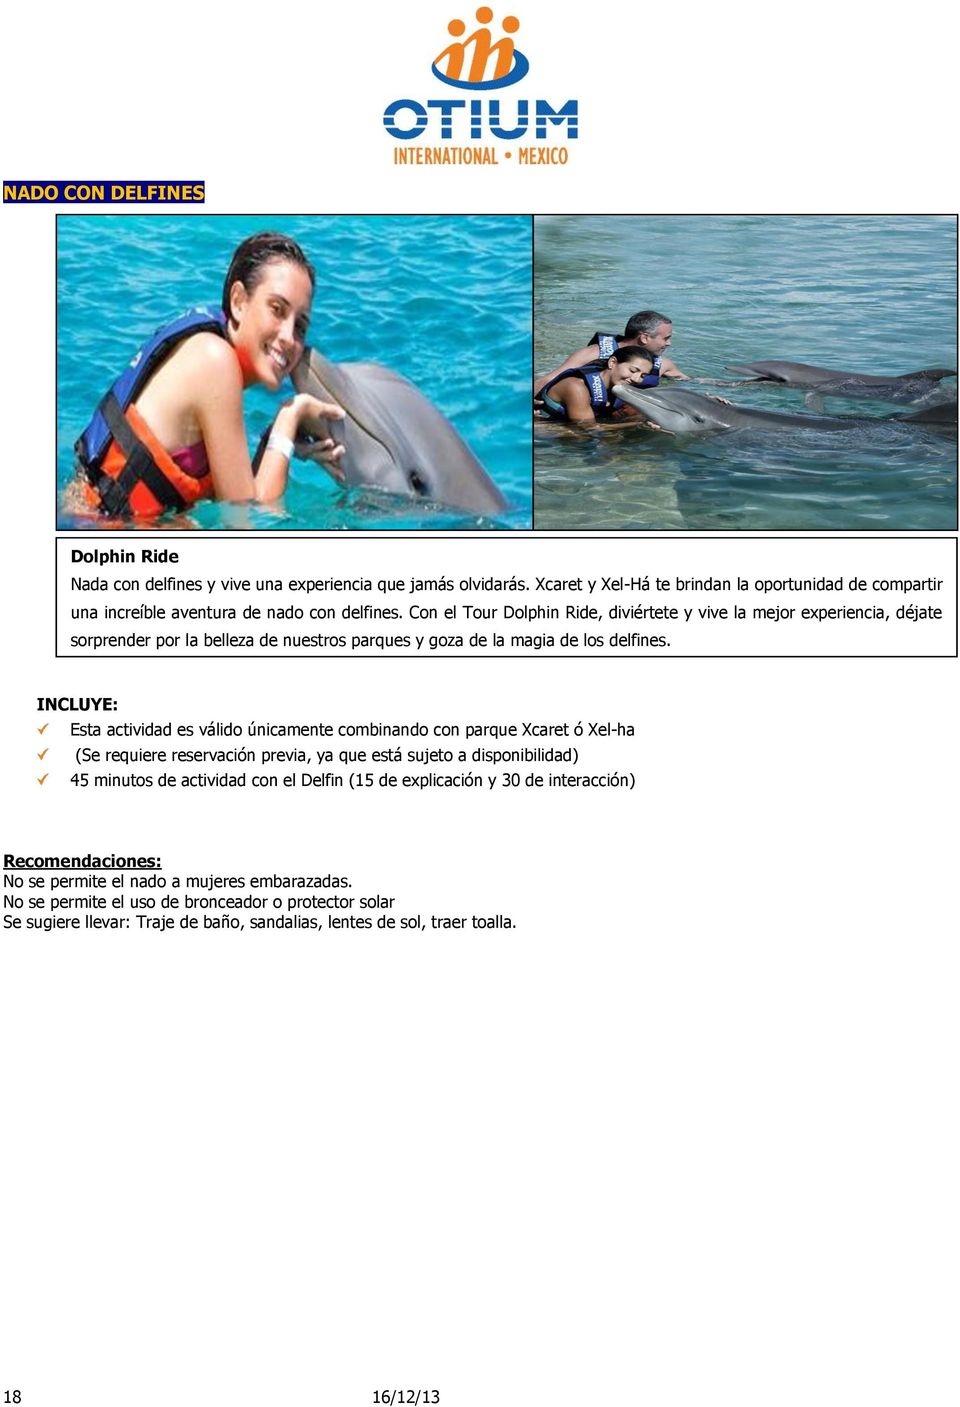 INCLUYE: Esta actividad es válido únicamente combinando con parque Xcaret ó Xel-ha (Se requiere reservación previa, ya que está sujeto a disponibilidad) 45 minutos de actividad con el Delfin (15